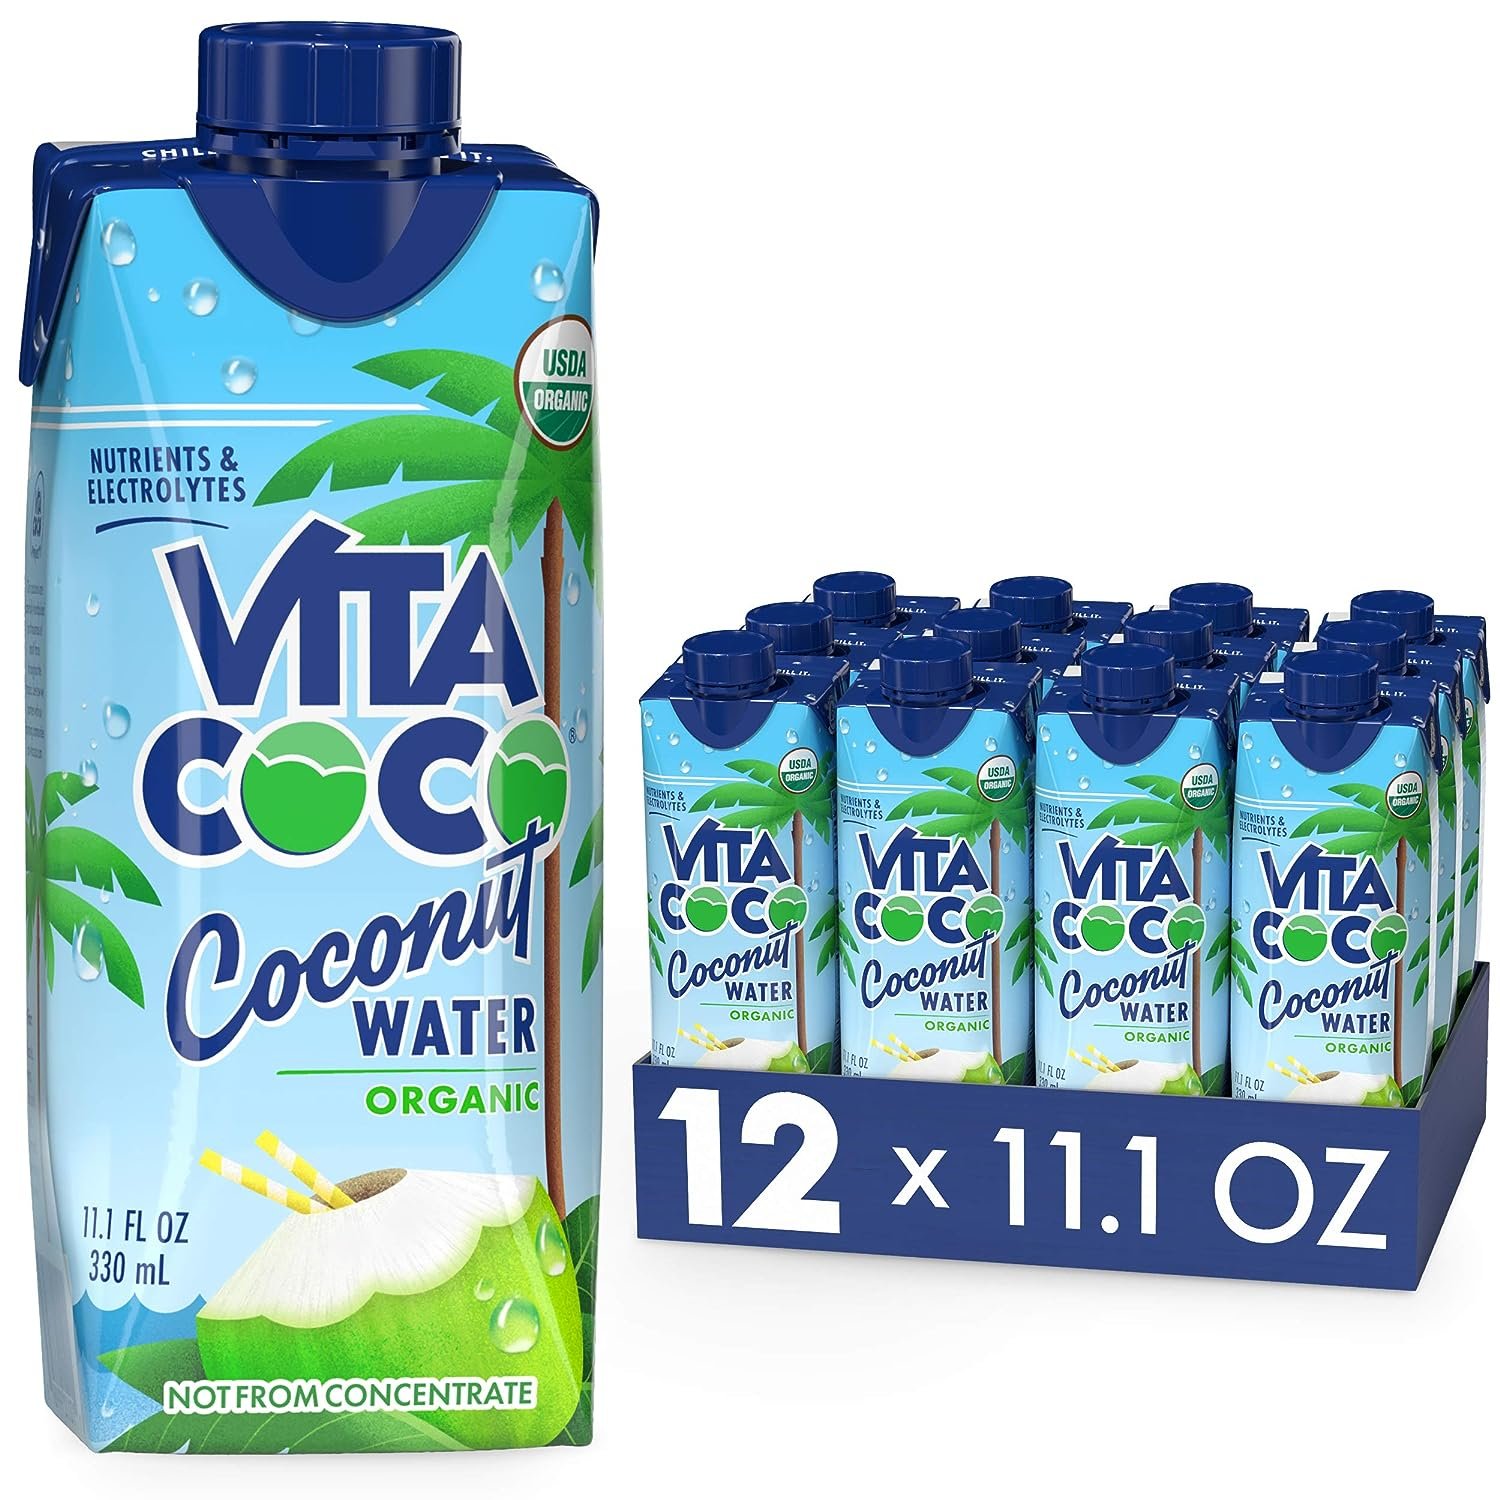 Vita Coco: Coconut Water